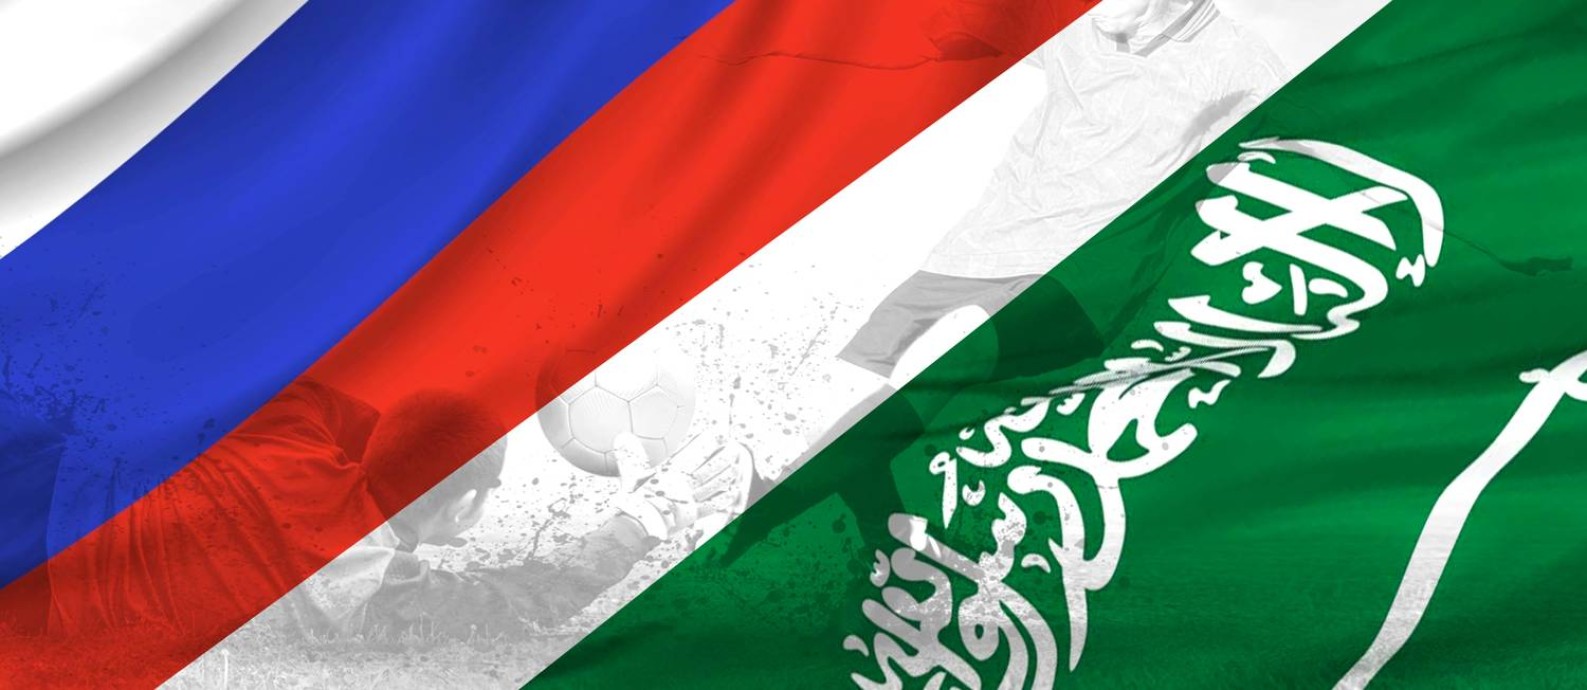 Rússia e Arábia Saudita abrem a Copa do Mundo 2018, em Moscou Foto: Editoria de Arte / O Globo